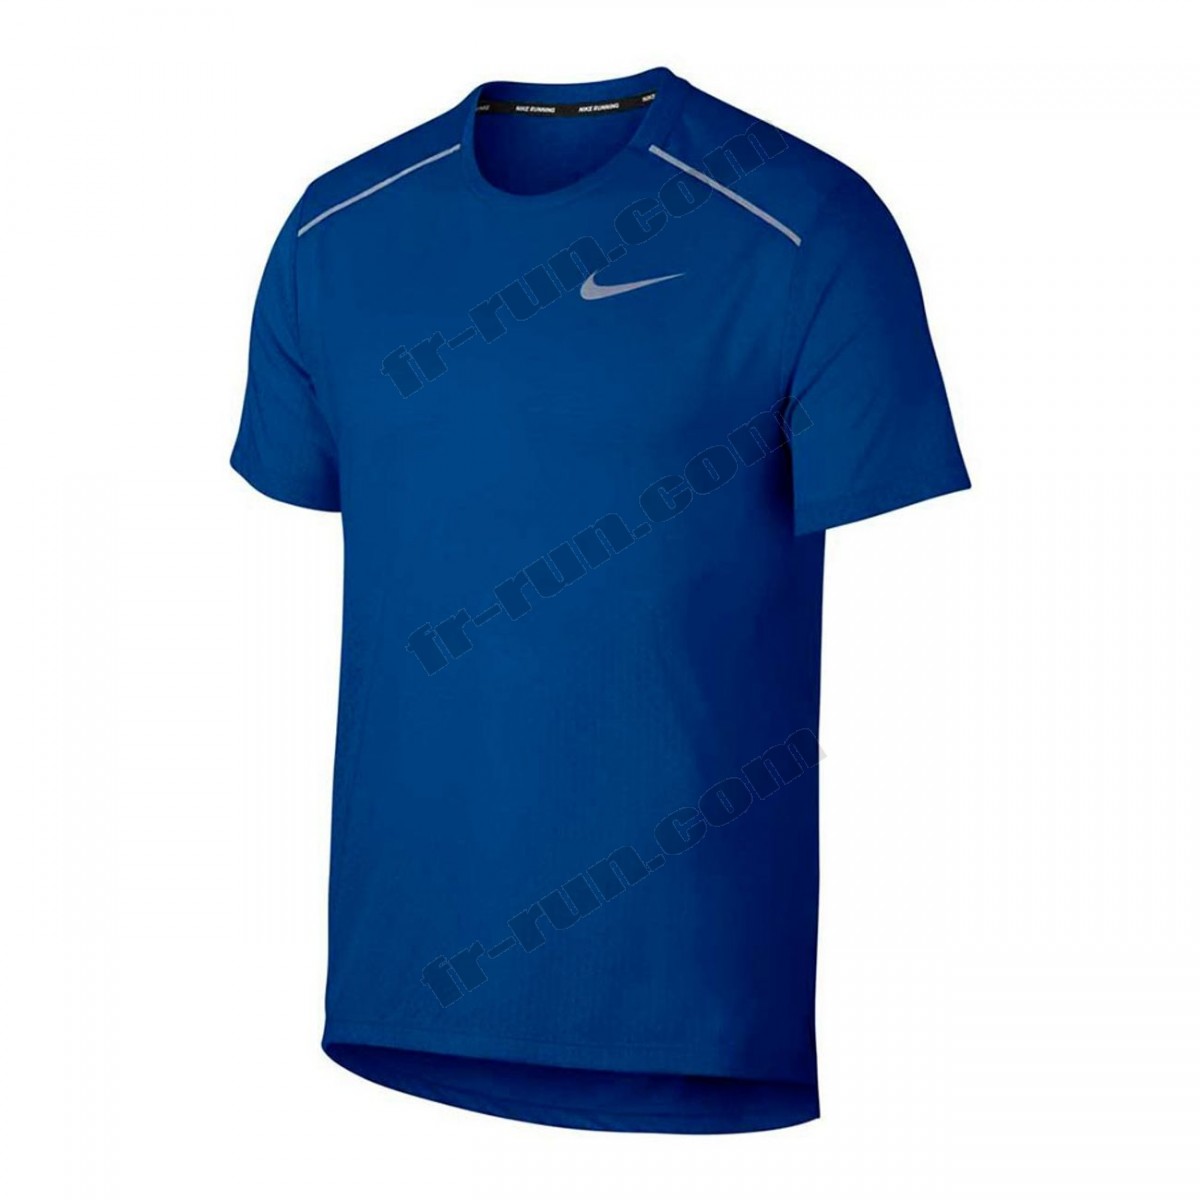 Nike/running homme NIKE Nike Rise 365 Hommes Haut running bleu ◇◇◇ Pas Cher Du Tout - -1